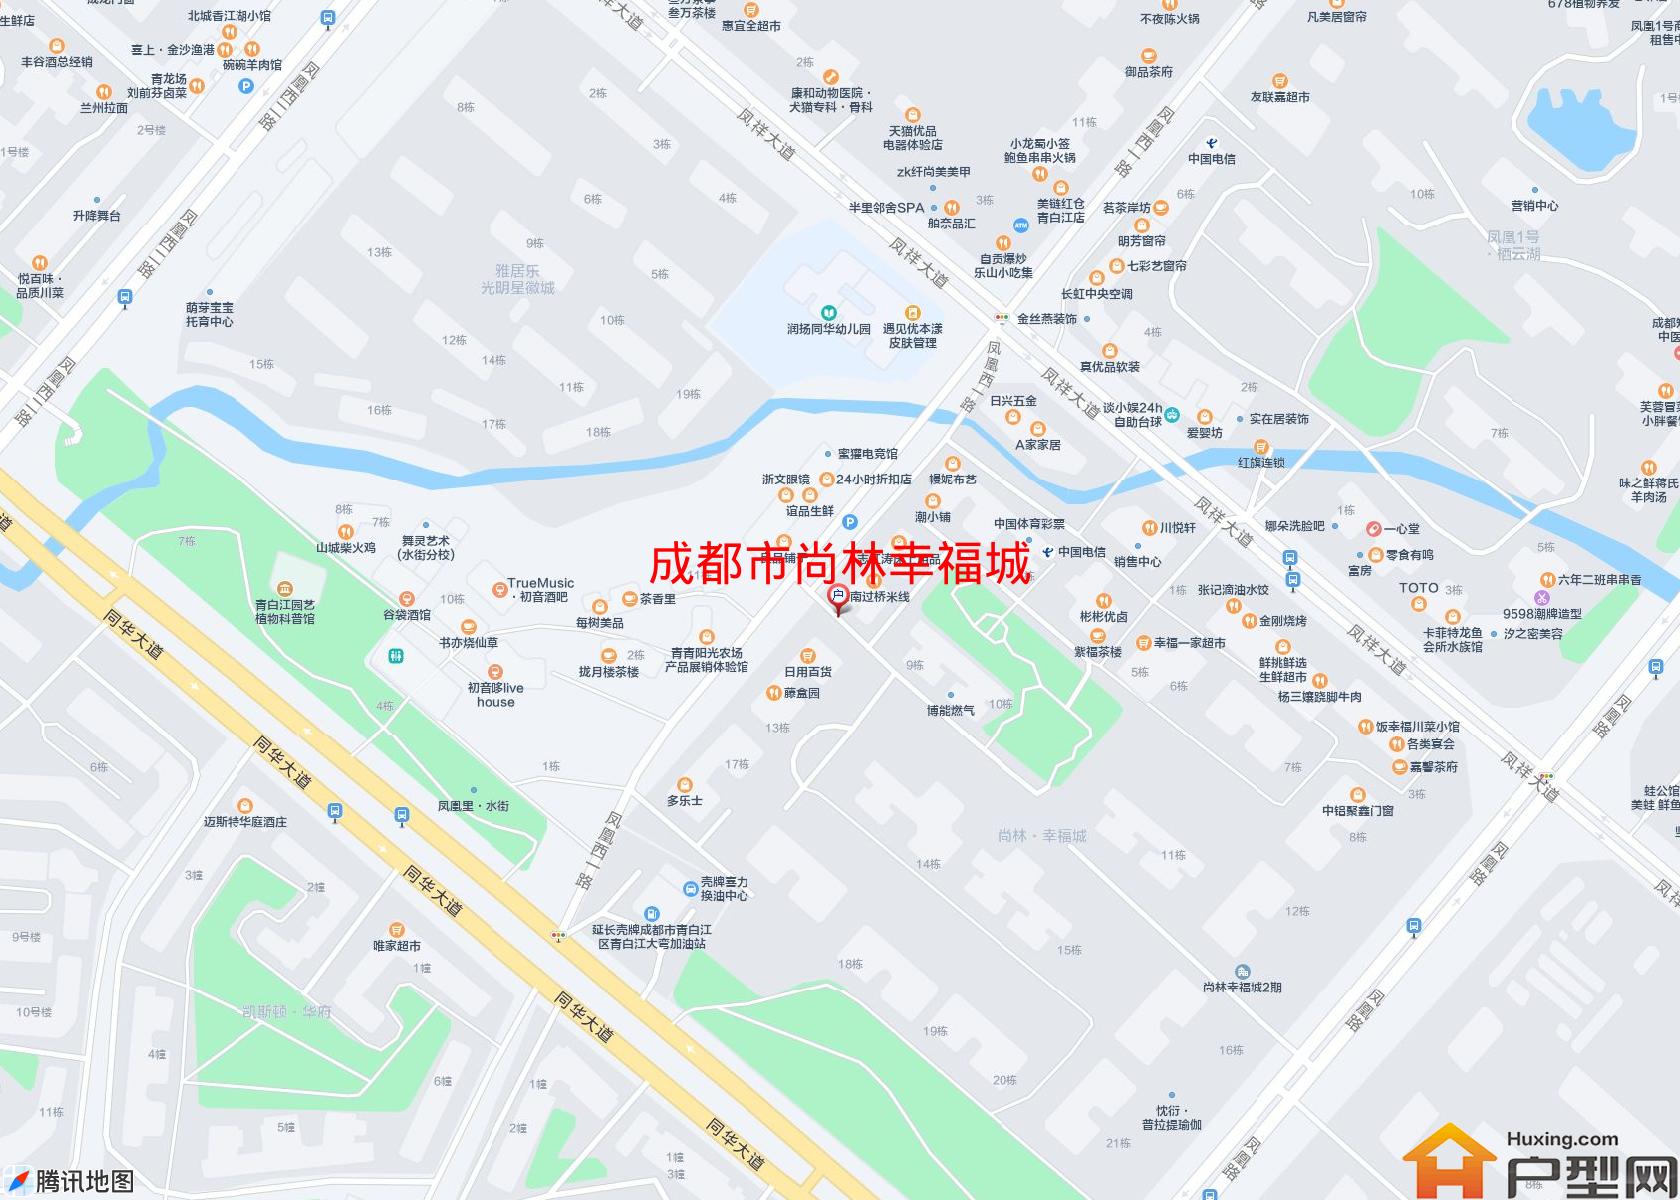 尚林幸福城小区 - 户型网